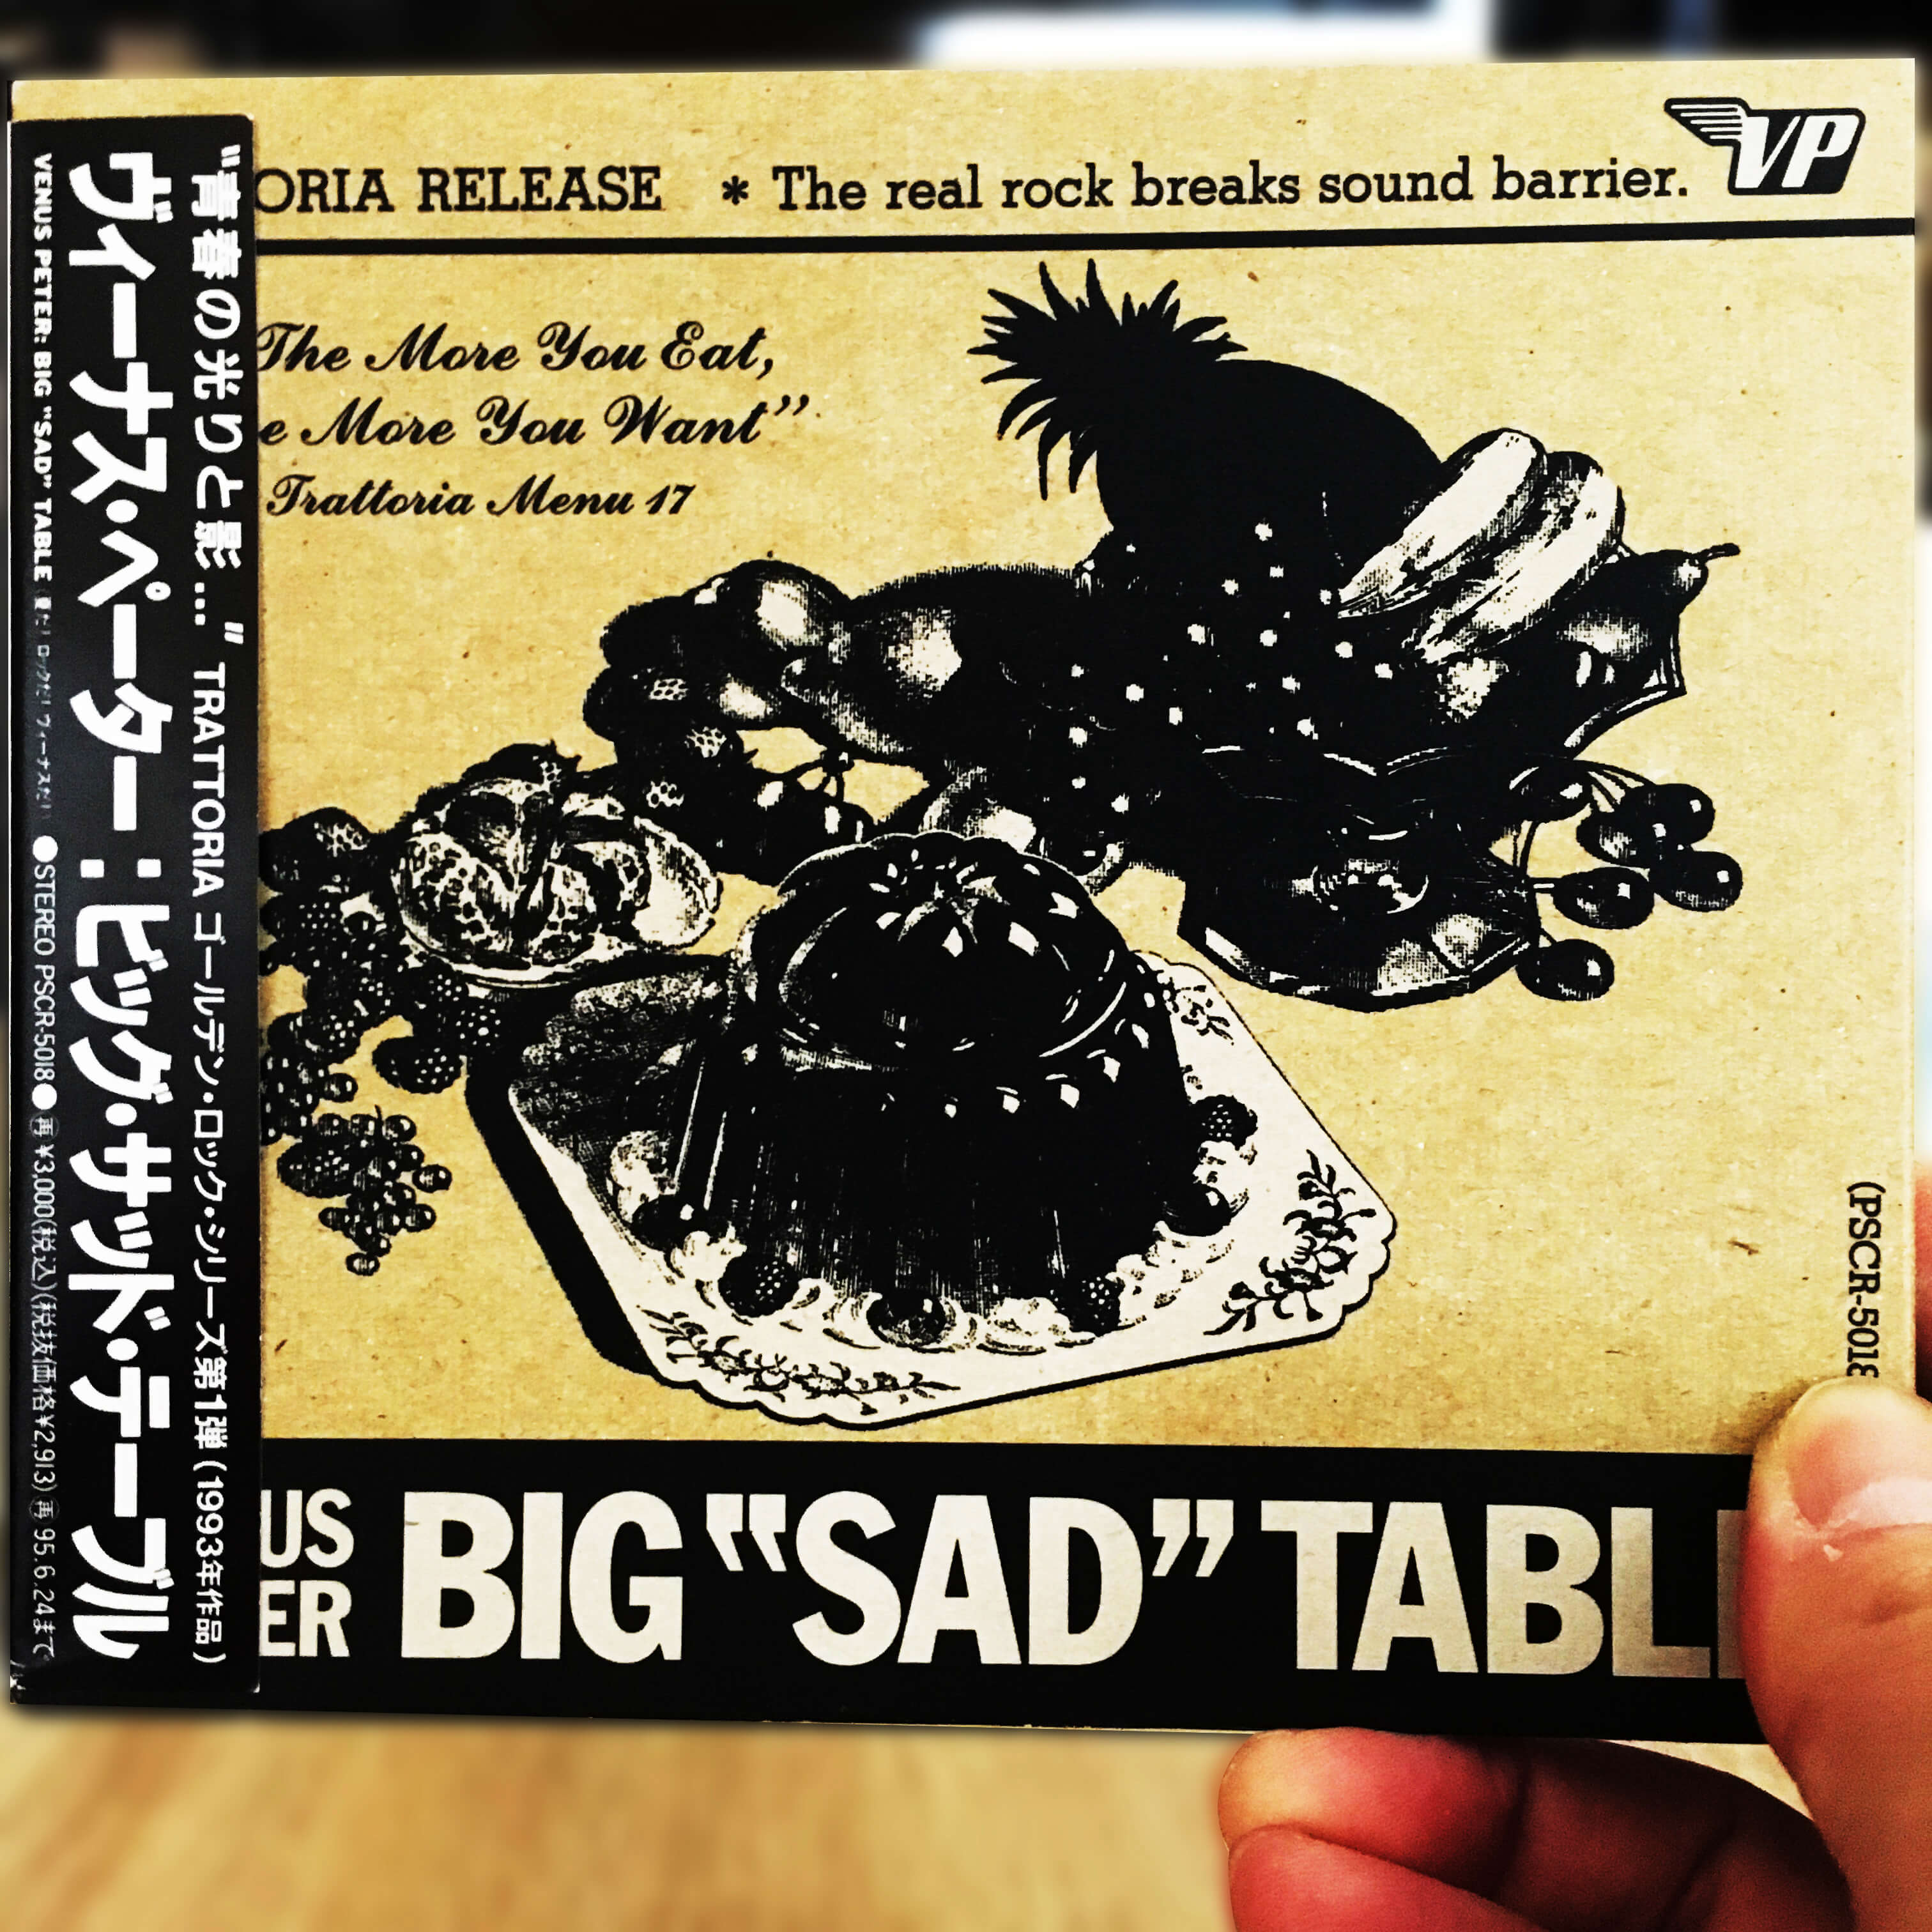 BIG “SAD” TABLE